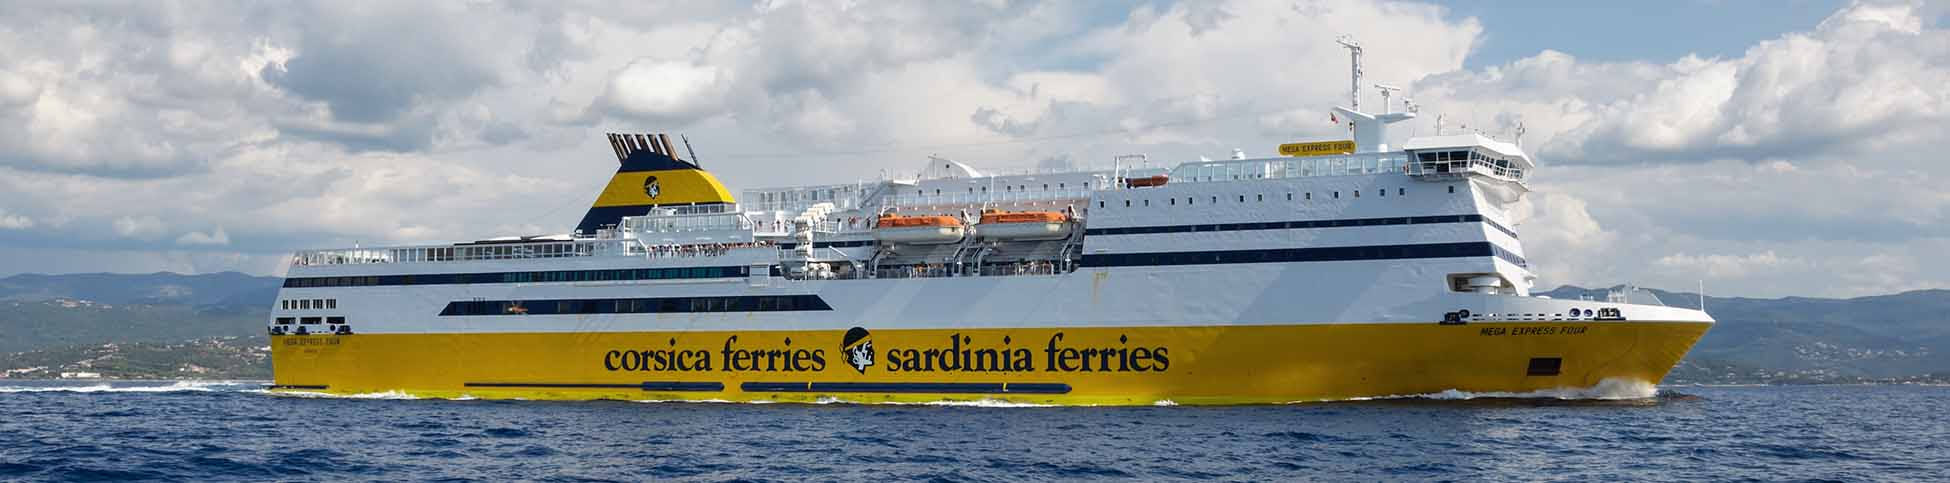 Immagine del porto di arrivo Porto Torres per la rotta traghetto Tolone - Porto Torres